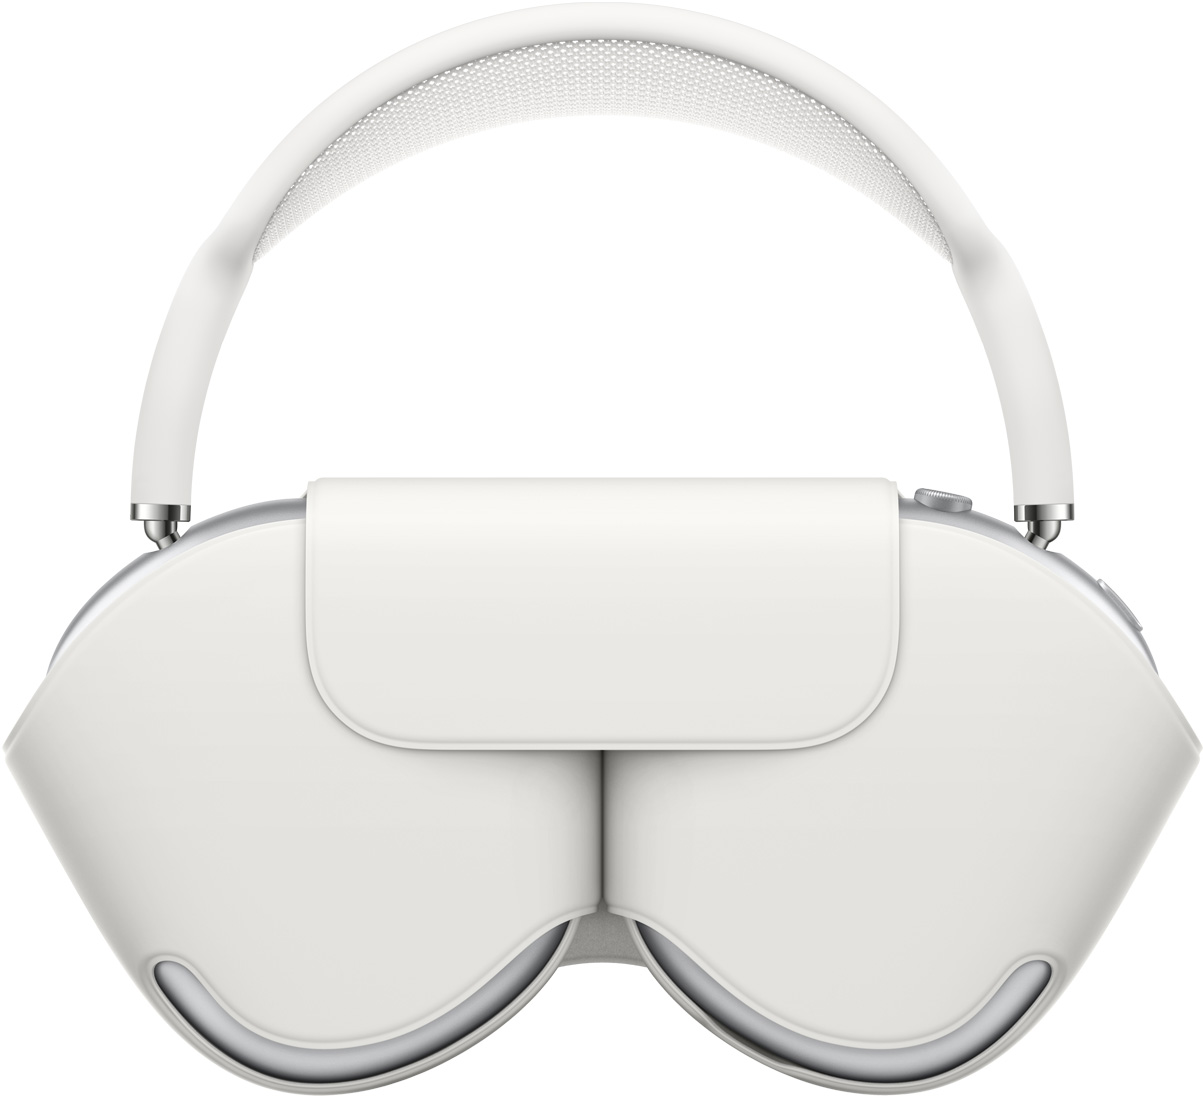 AirPods Max in Silber mit farblich passendem weißen Smart Case, das die Hörmuscheln schützt. Der Kopfbügel der verstauten AirPods Max ragt über das Case hinaus.